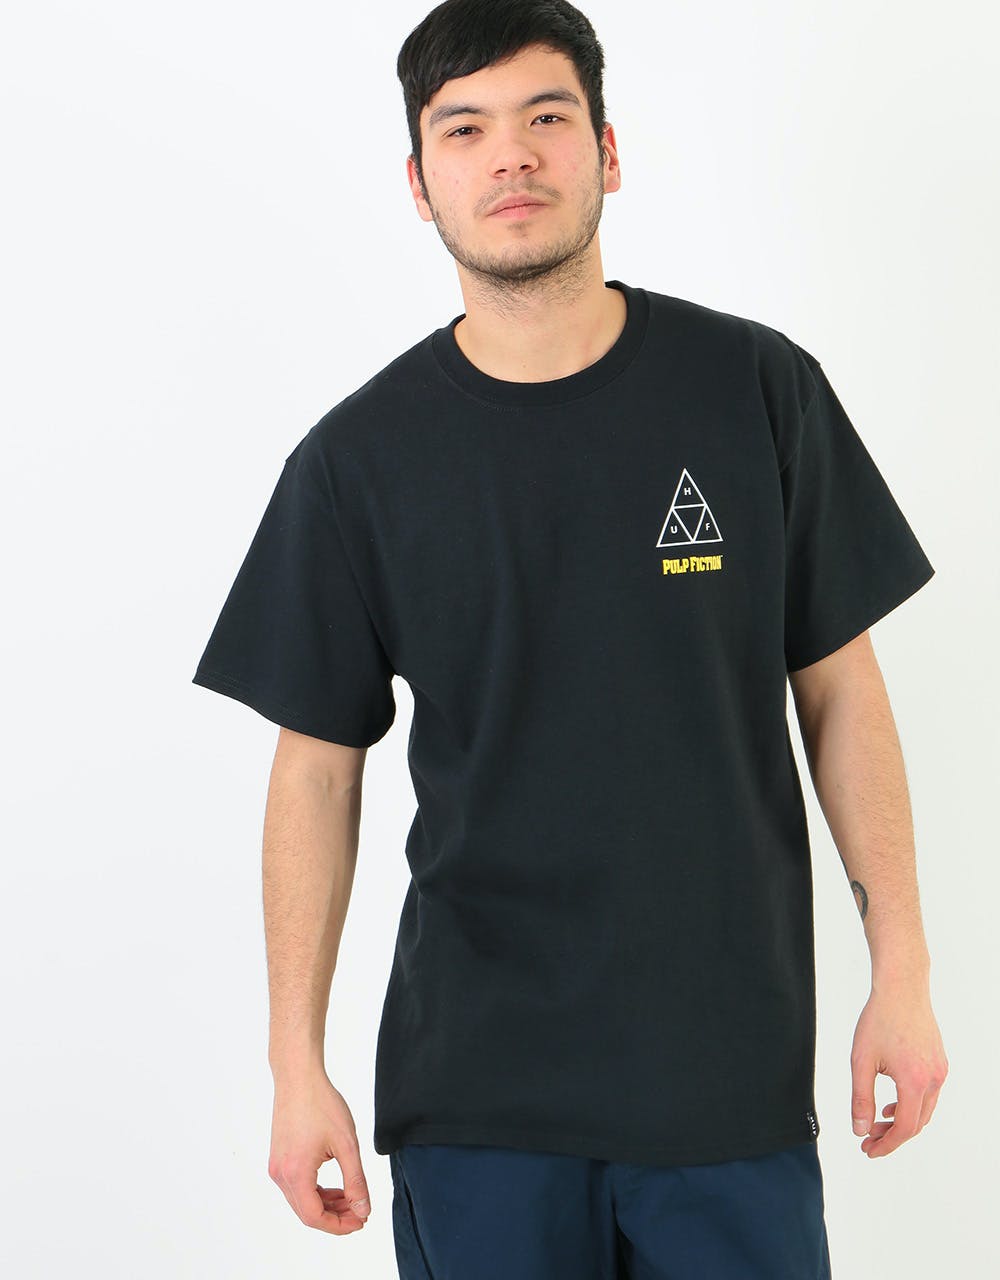 HUF x Pulp Fiction Mia TT T-Shirt - Black